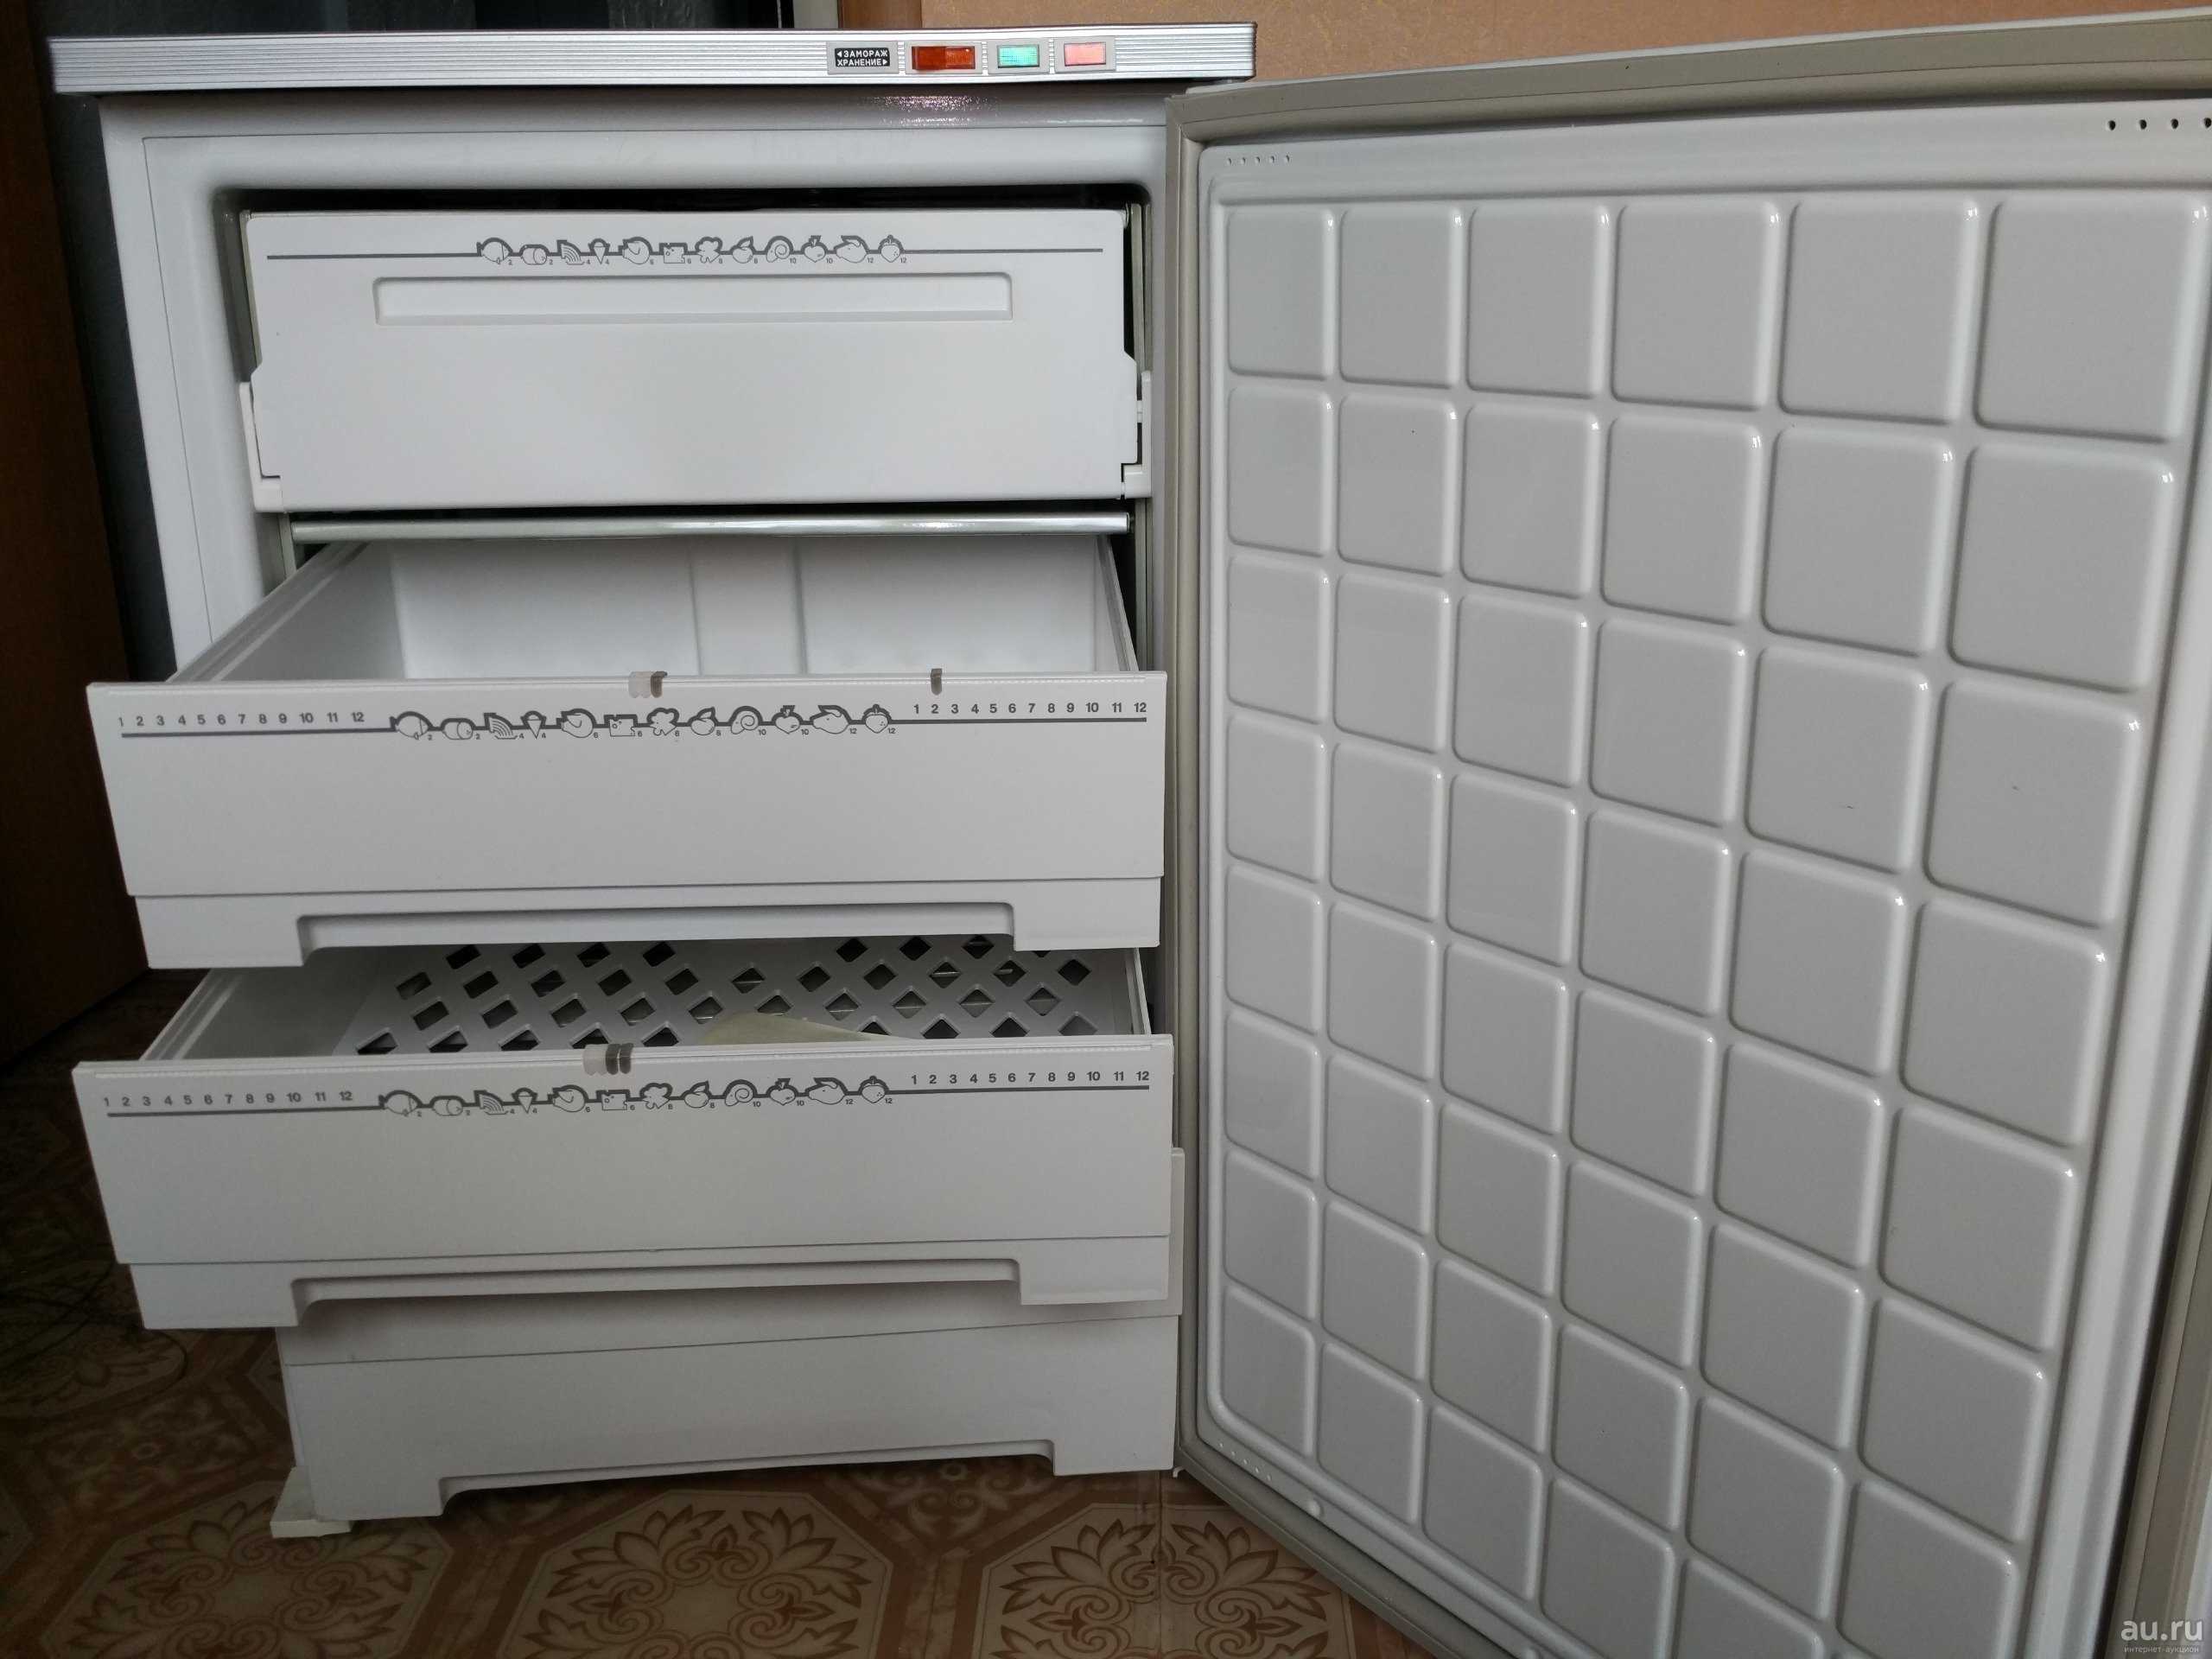 Холодильник бирюса 109 (белый) купить от 8690 руб в нижнем новгороде, сравнить цены, отзывы, видео обзоры и характеристики